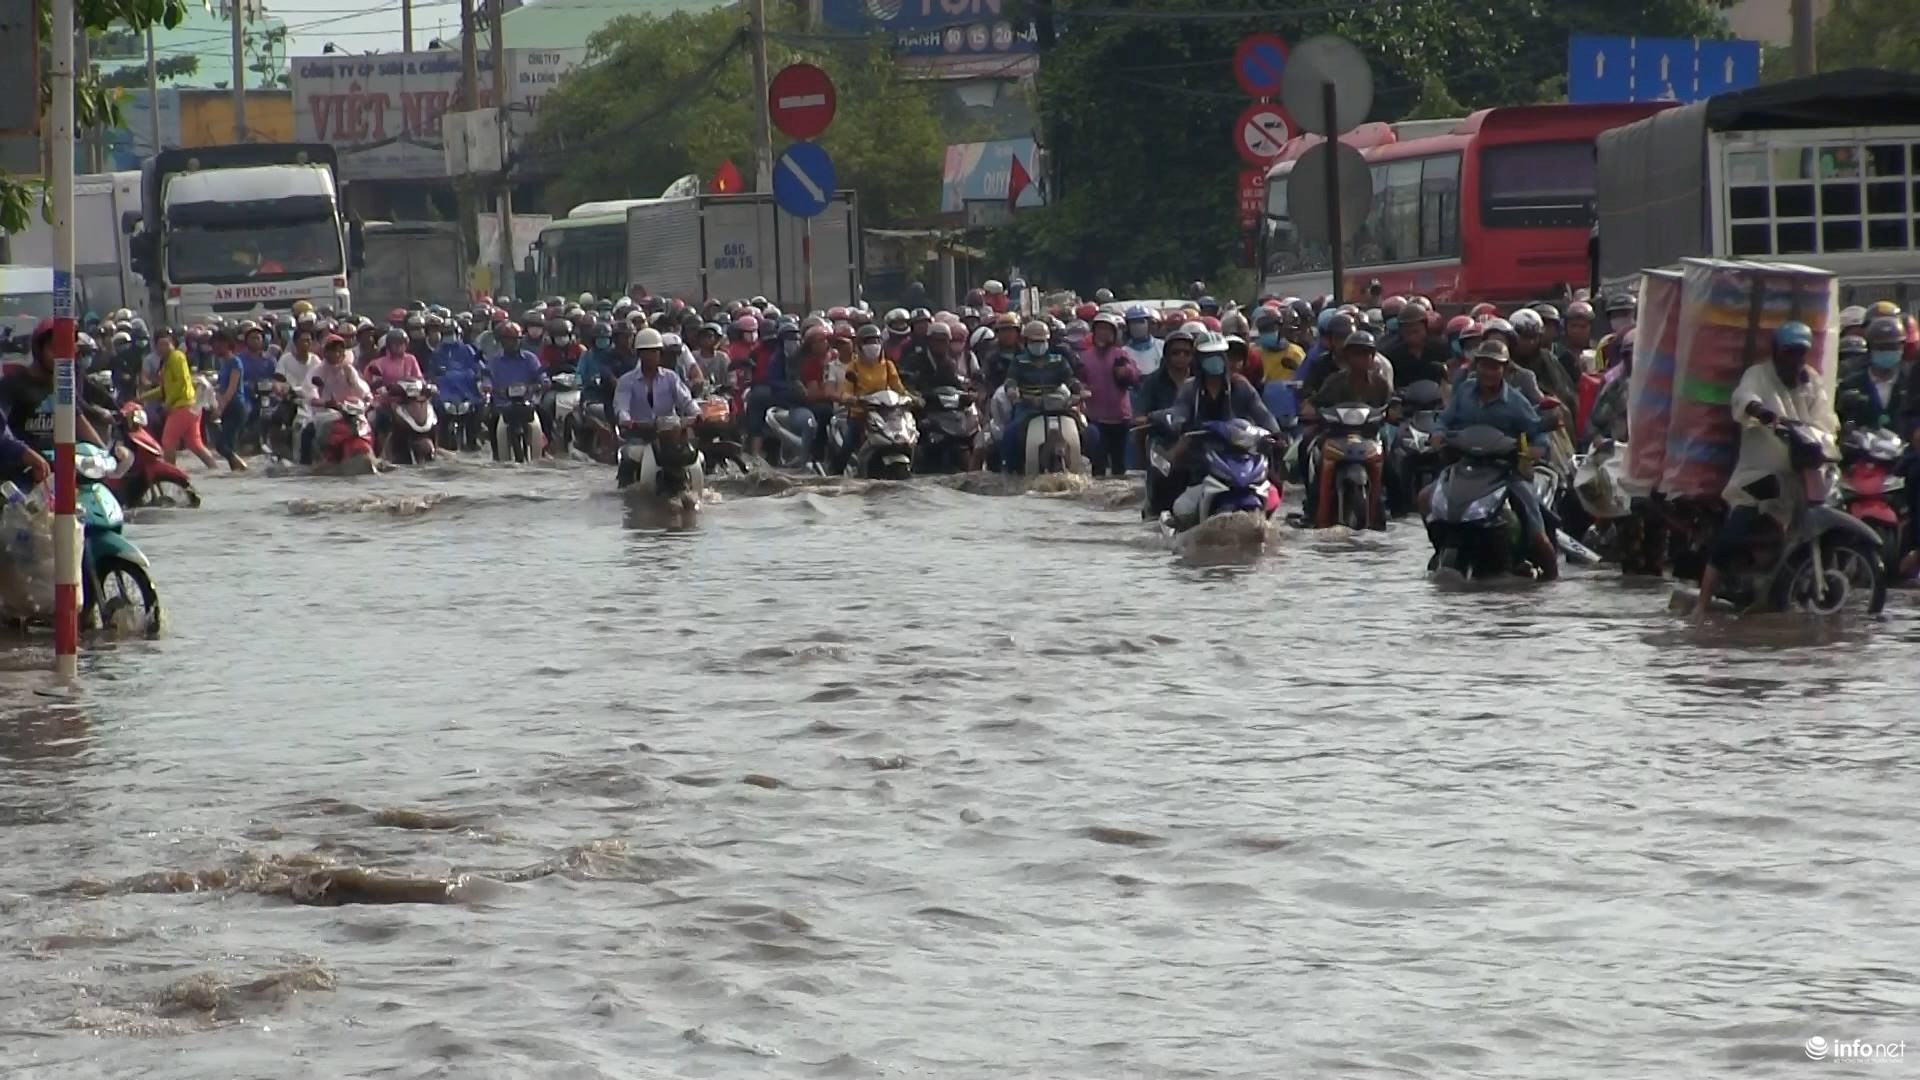 Báo Infonet đưa tin, cơn mưa như trút nước rạng sáng nay khiến Quốc lộ 1A đoạn qua quận Bình Tân, Bình Chánh bị ngập sâu hàng ngàn phương tiện bị ùn ứ kéo dài.